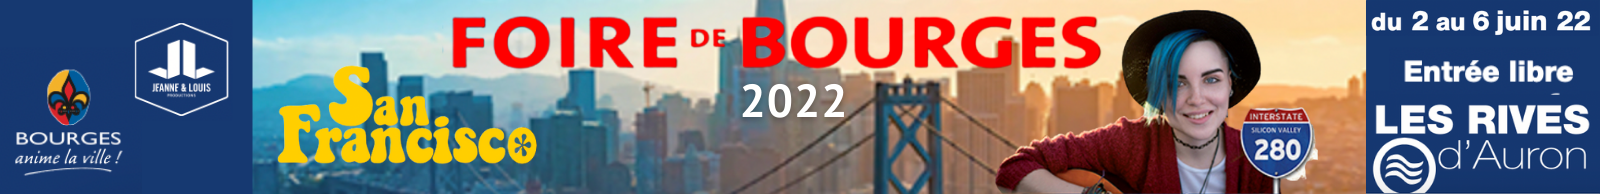 Foire de Bourges 2022